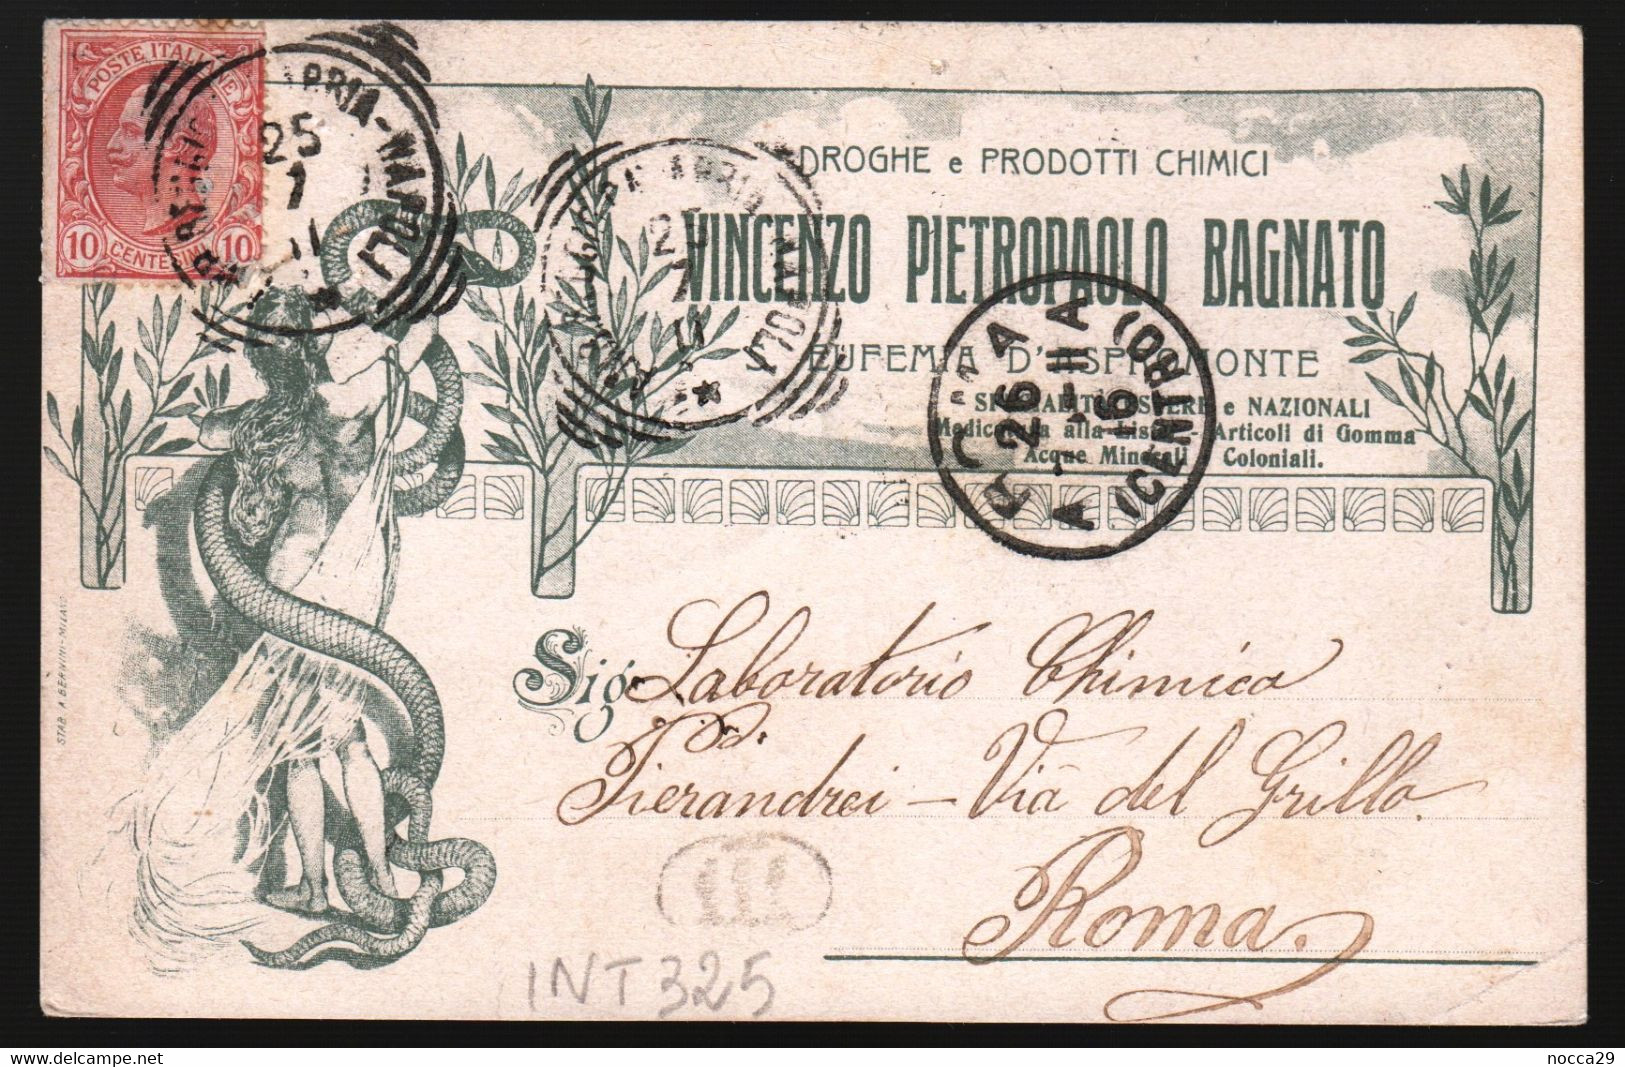 S. EUFEMIA D'ASPROMONTE - 1911 - BELLA CARTOLINA COMMERCIALE - PETRAROLO BAGNATO - PRODOTTI CHIMICI  (INT325) - Negozi